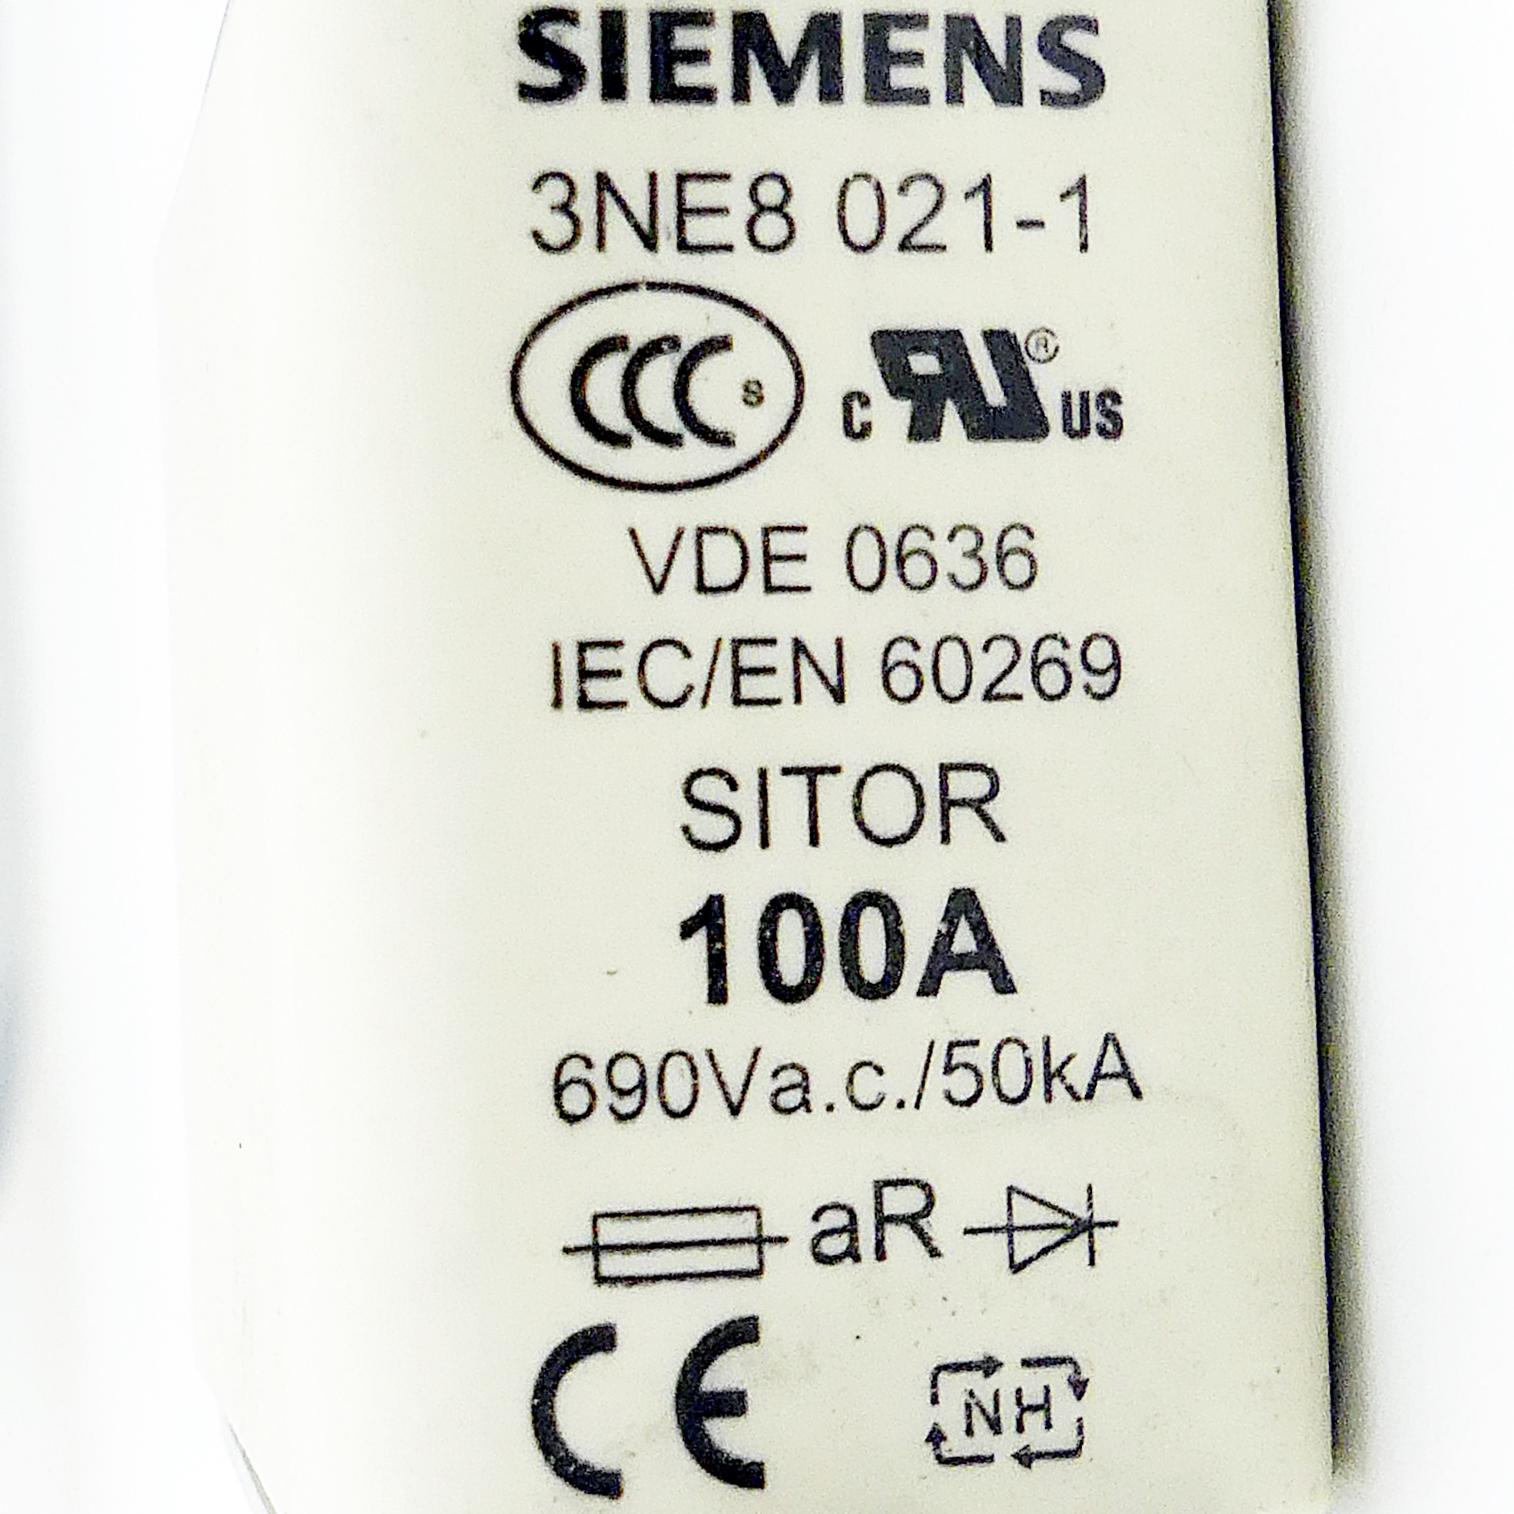 Produktfoto 2 von SIEMENS SITOR-Sicherungseinsatz